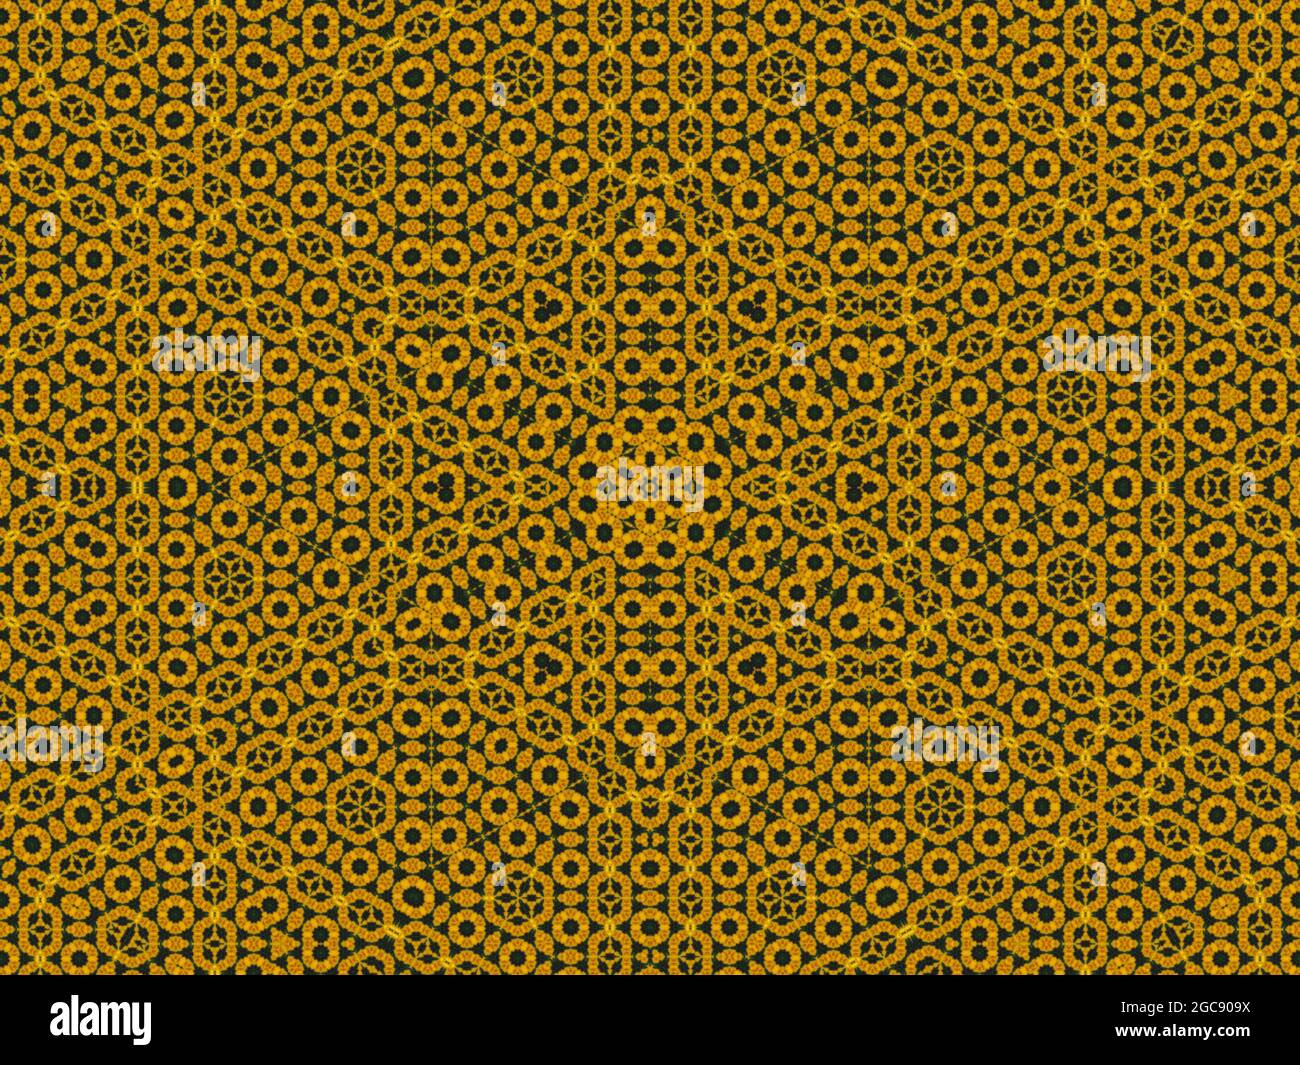 Patrón digital abstracto de abeja y panal. Estampado de caleidoscopio de panal de abeja para una decoración interior. Diseños geométricos de estilo islámico para azulejos. Foto de stock